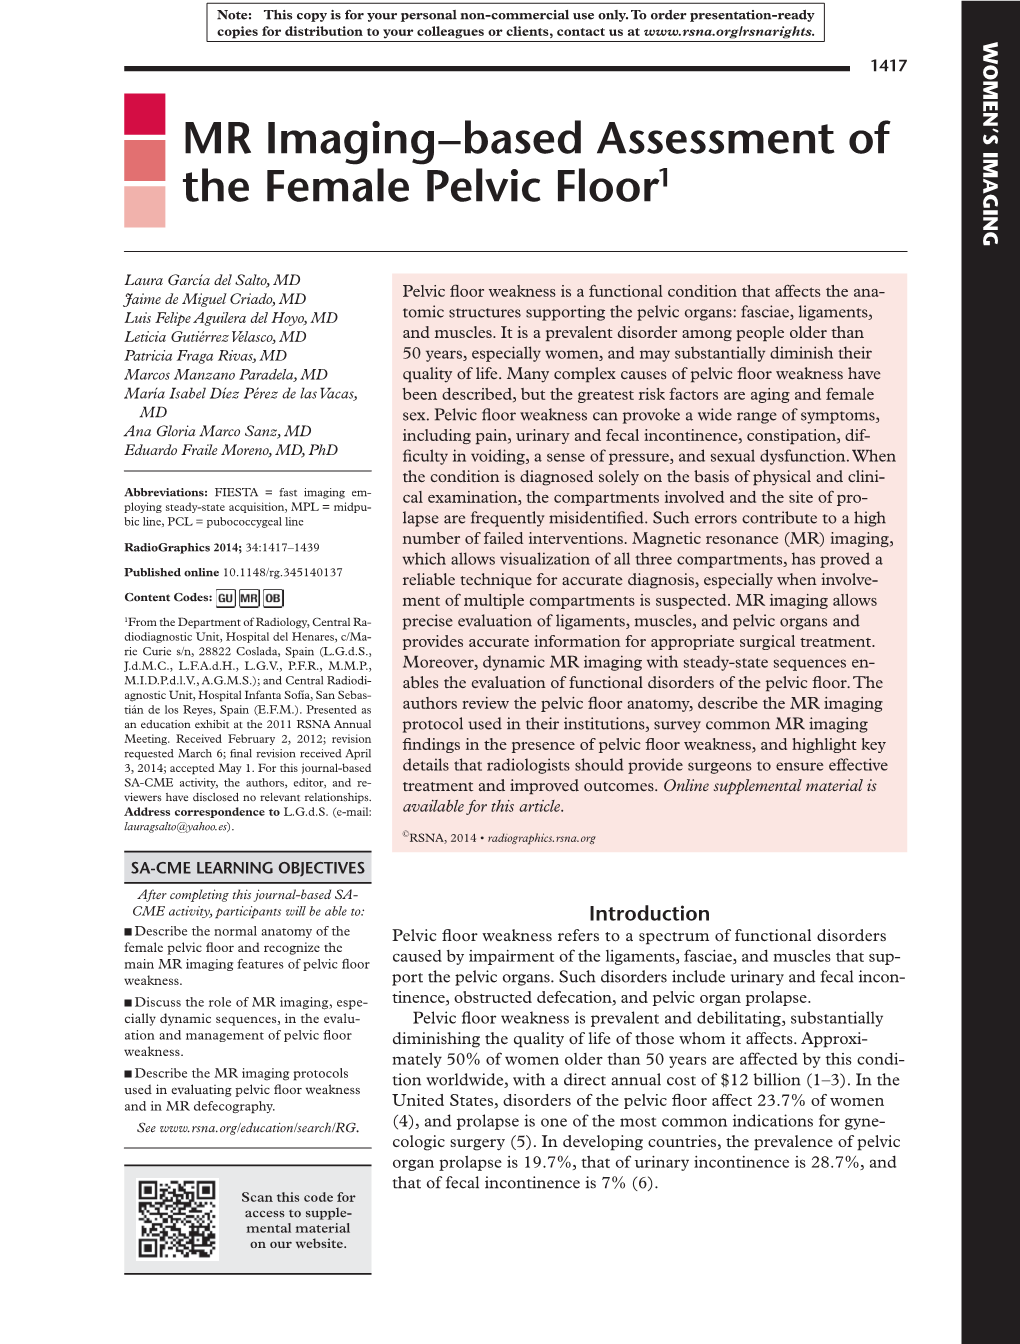 MR Imaging–Based Assessment of the Female Pelvic Floor1